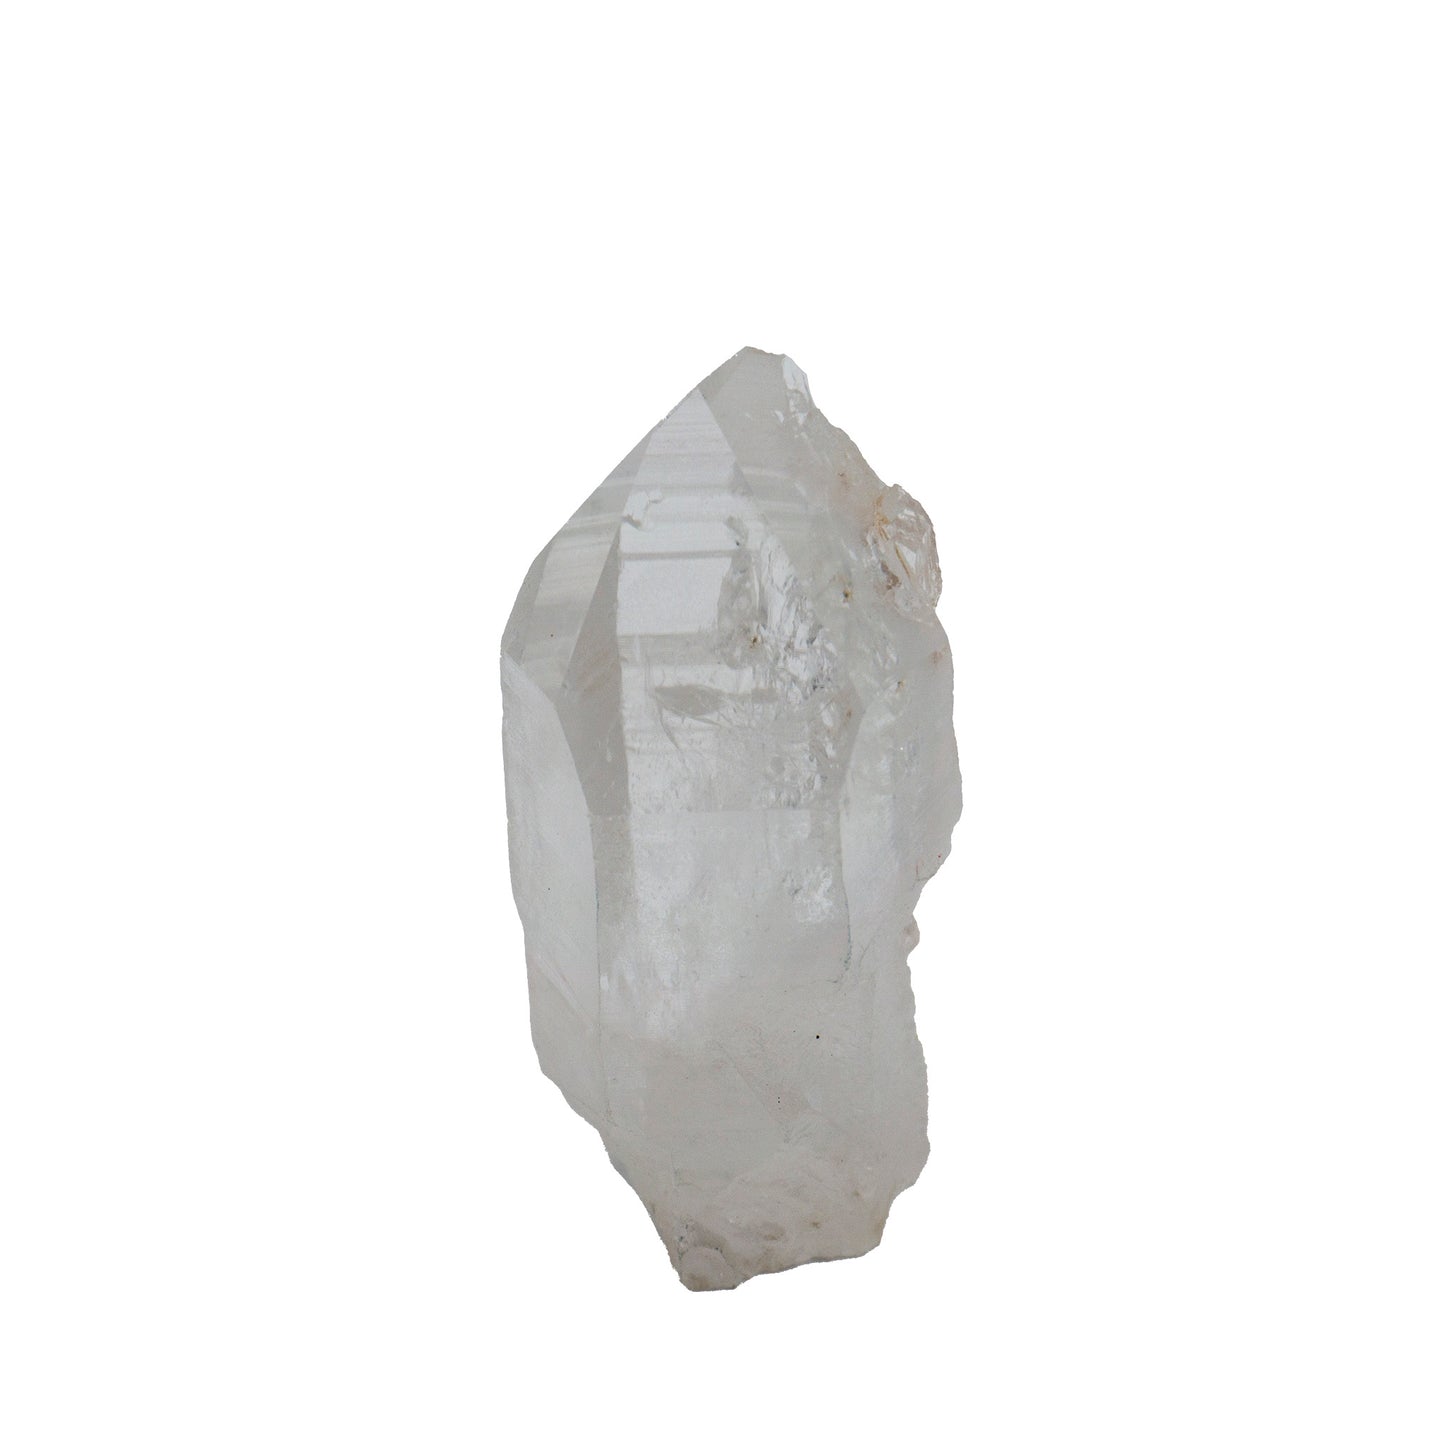 cluster of white quartz crystals